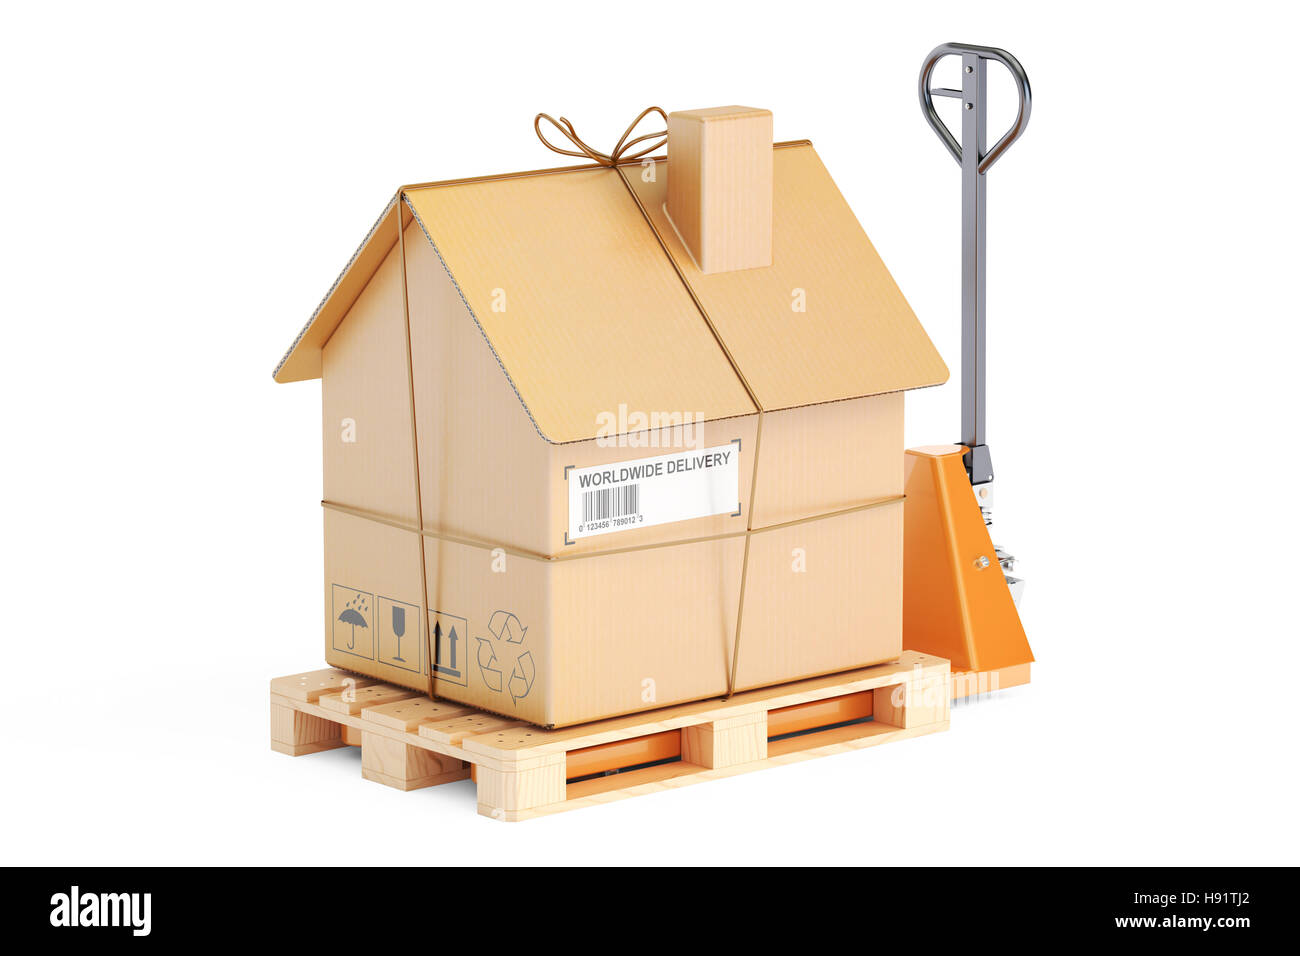 Déménagement Résidentiel concept. Transpalette hydraulique avec maison en carton parcel, rendu 3D Banque D'Images